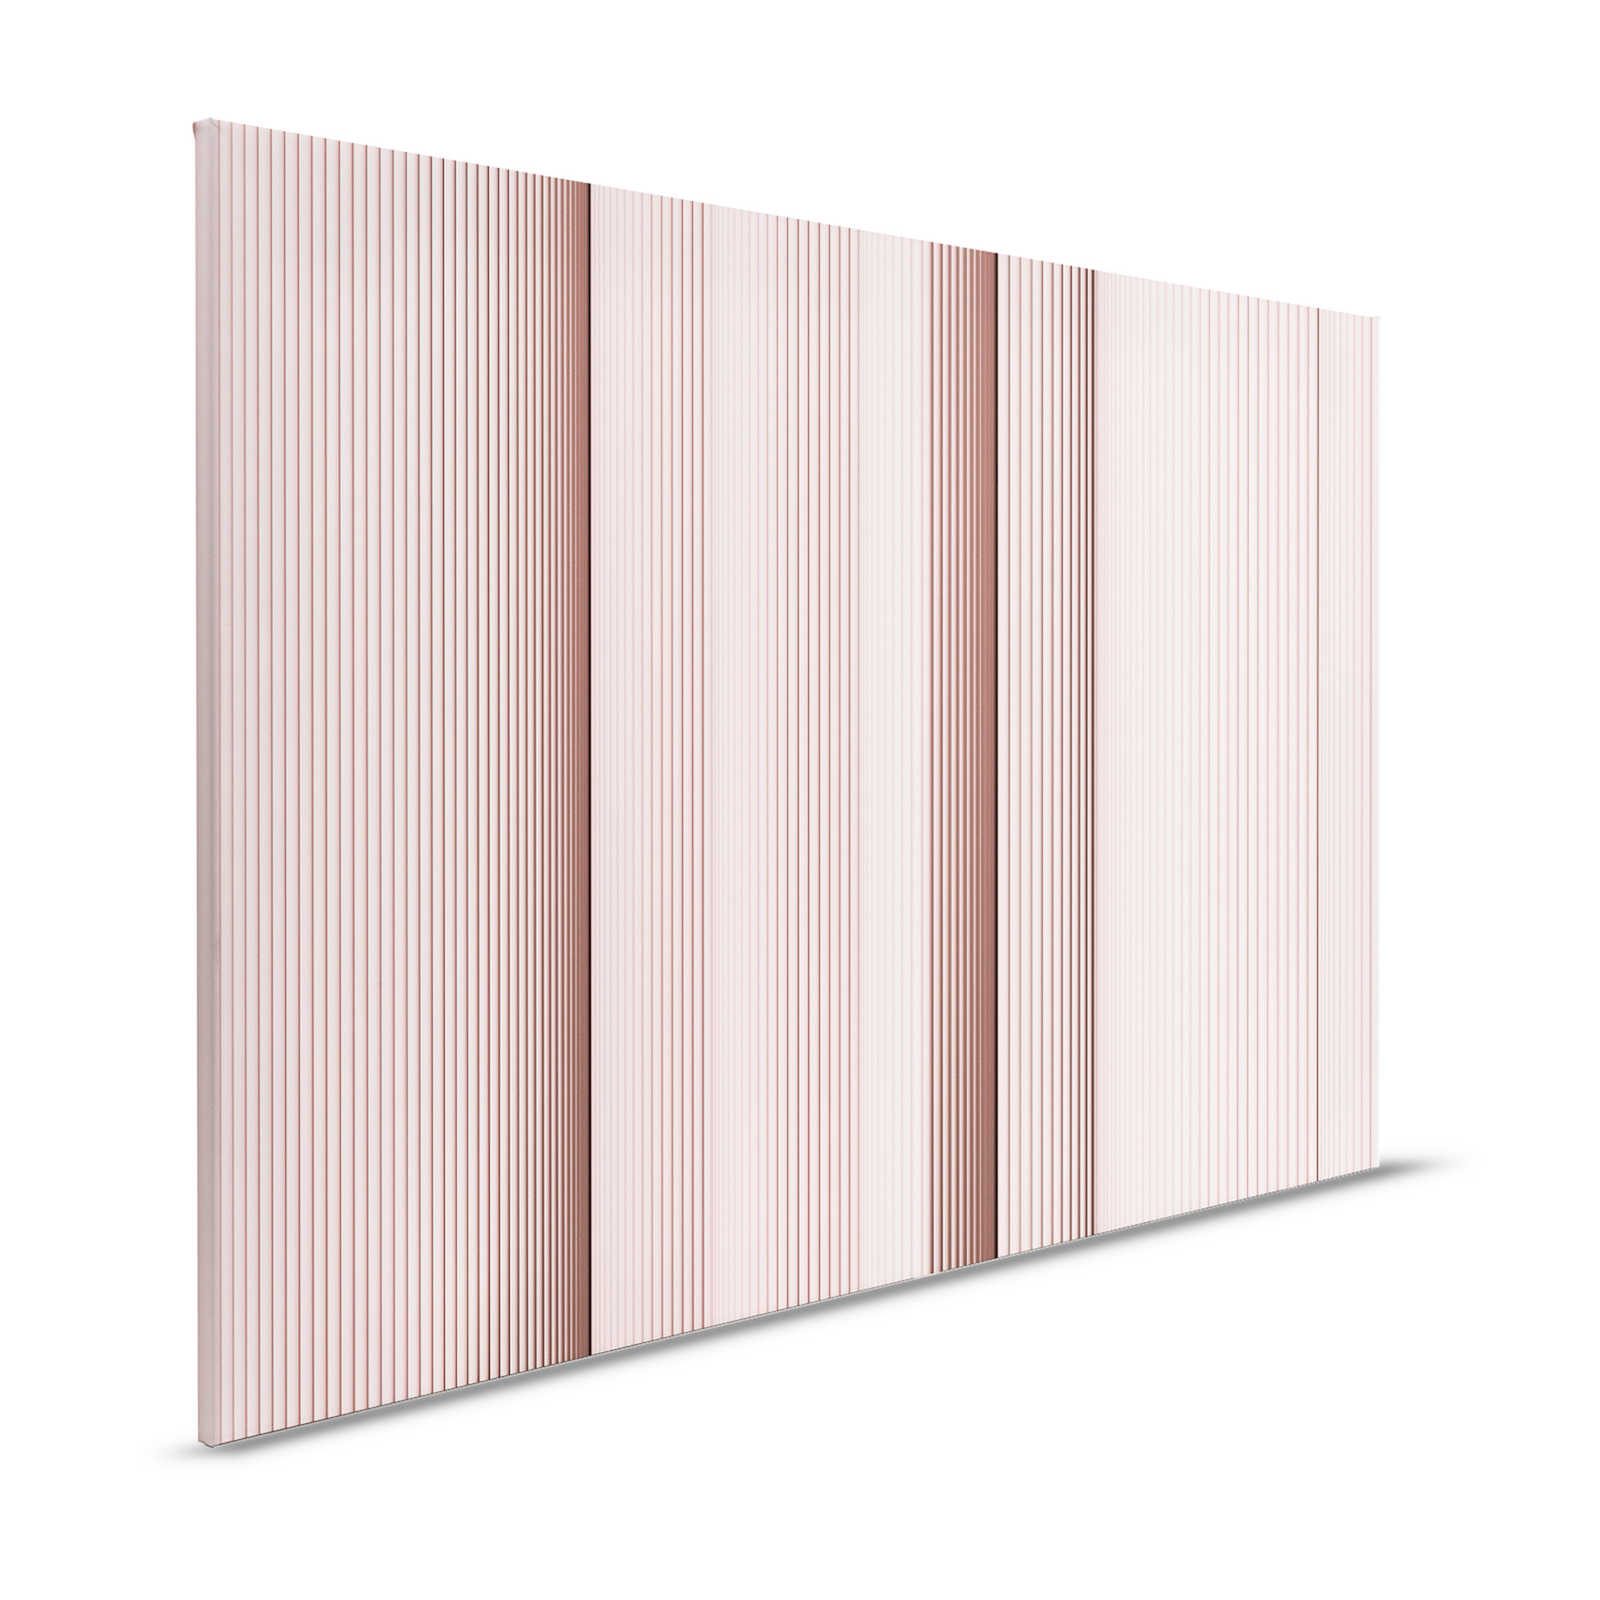 Magic Wall 4 - Pittura su tela a righe con effetto illusione 3D, rosa e bianco - 1,20 m x 0,80 m
